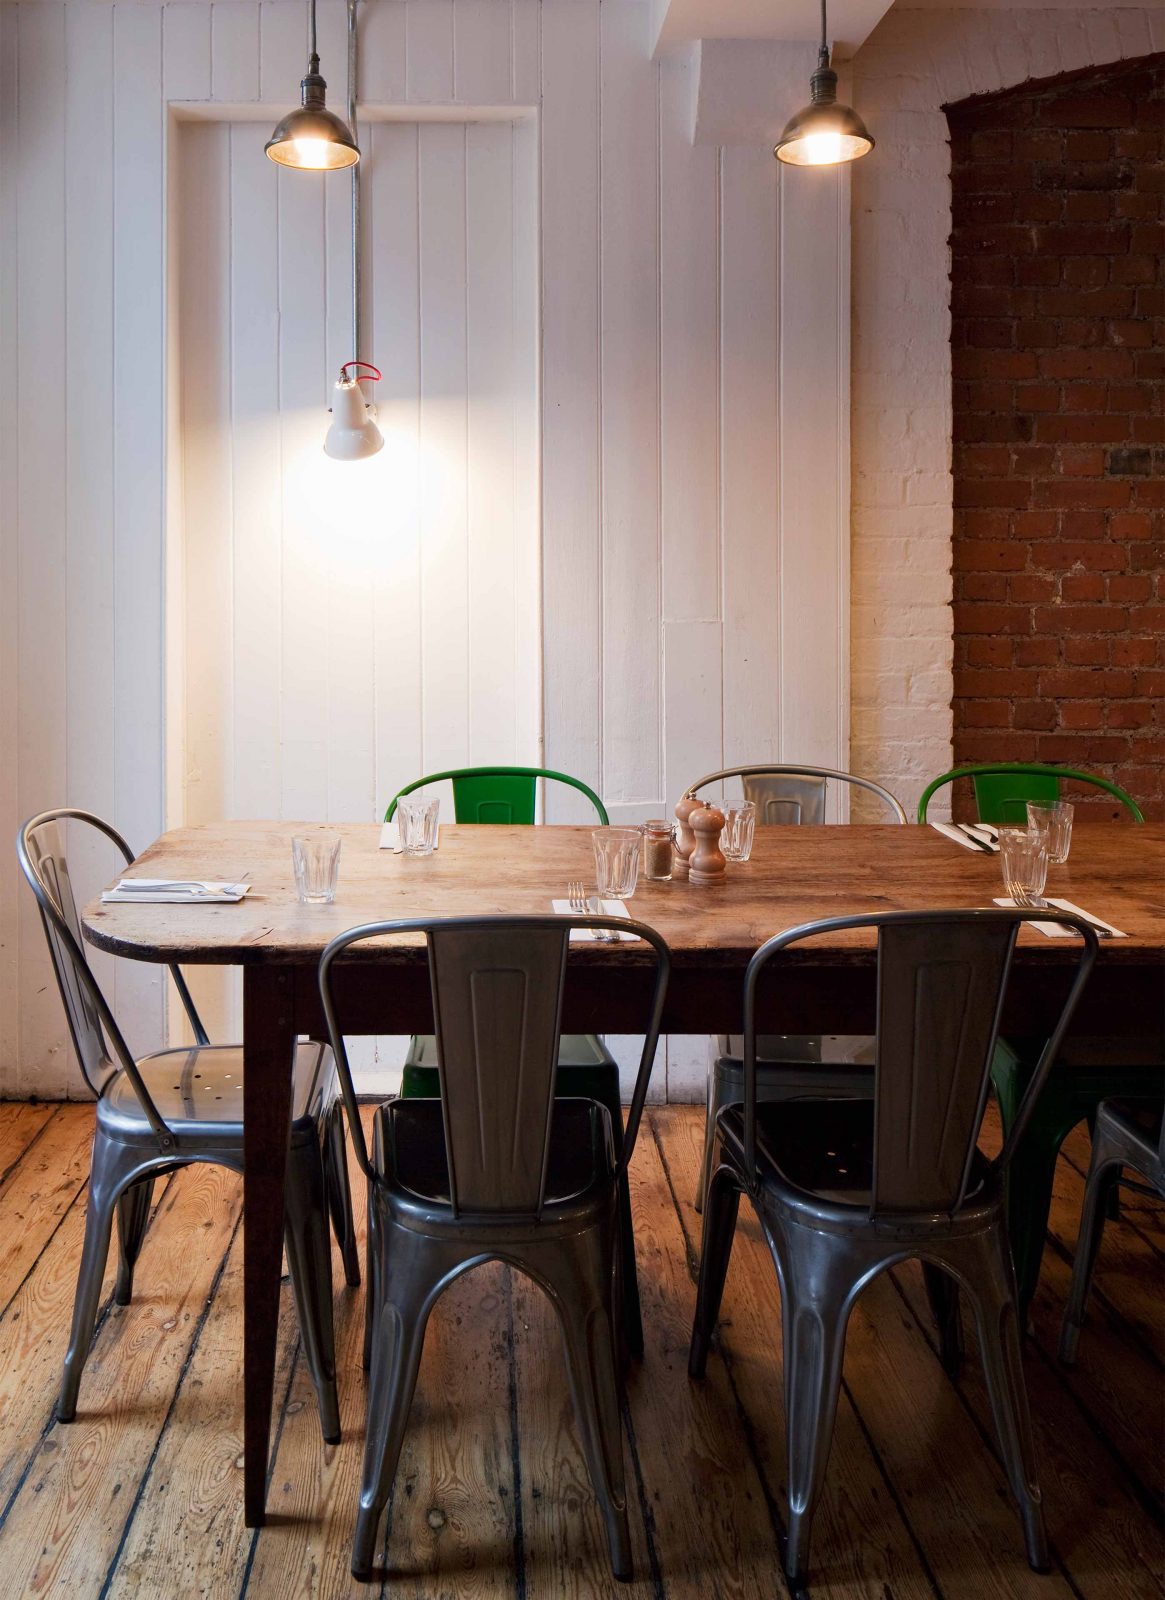 Lighting Minimal Stylish Interior Design Dining Table Restaurant Studio N